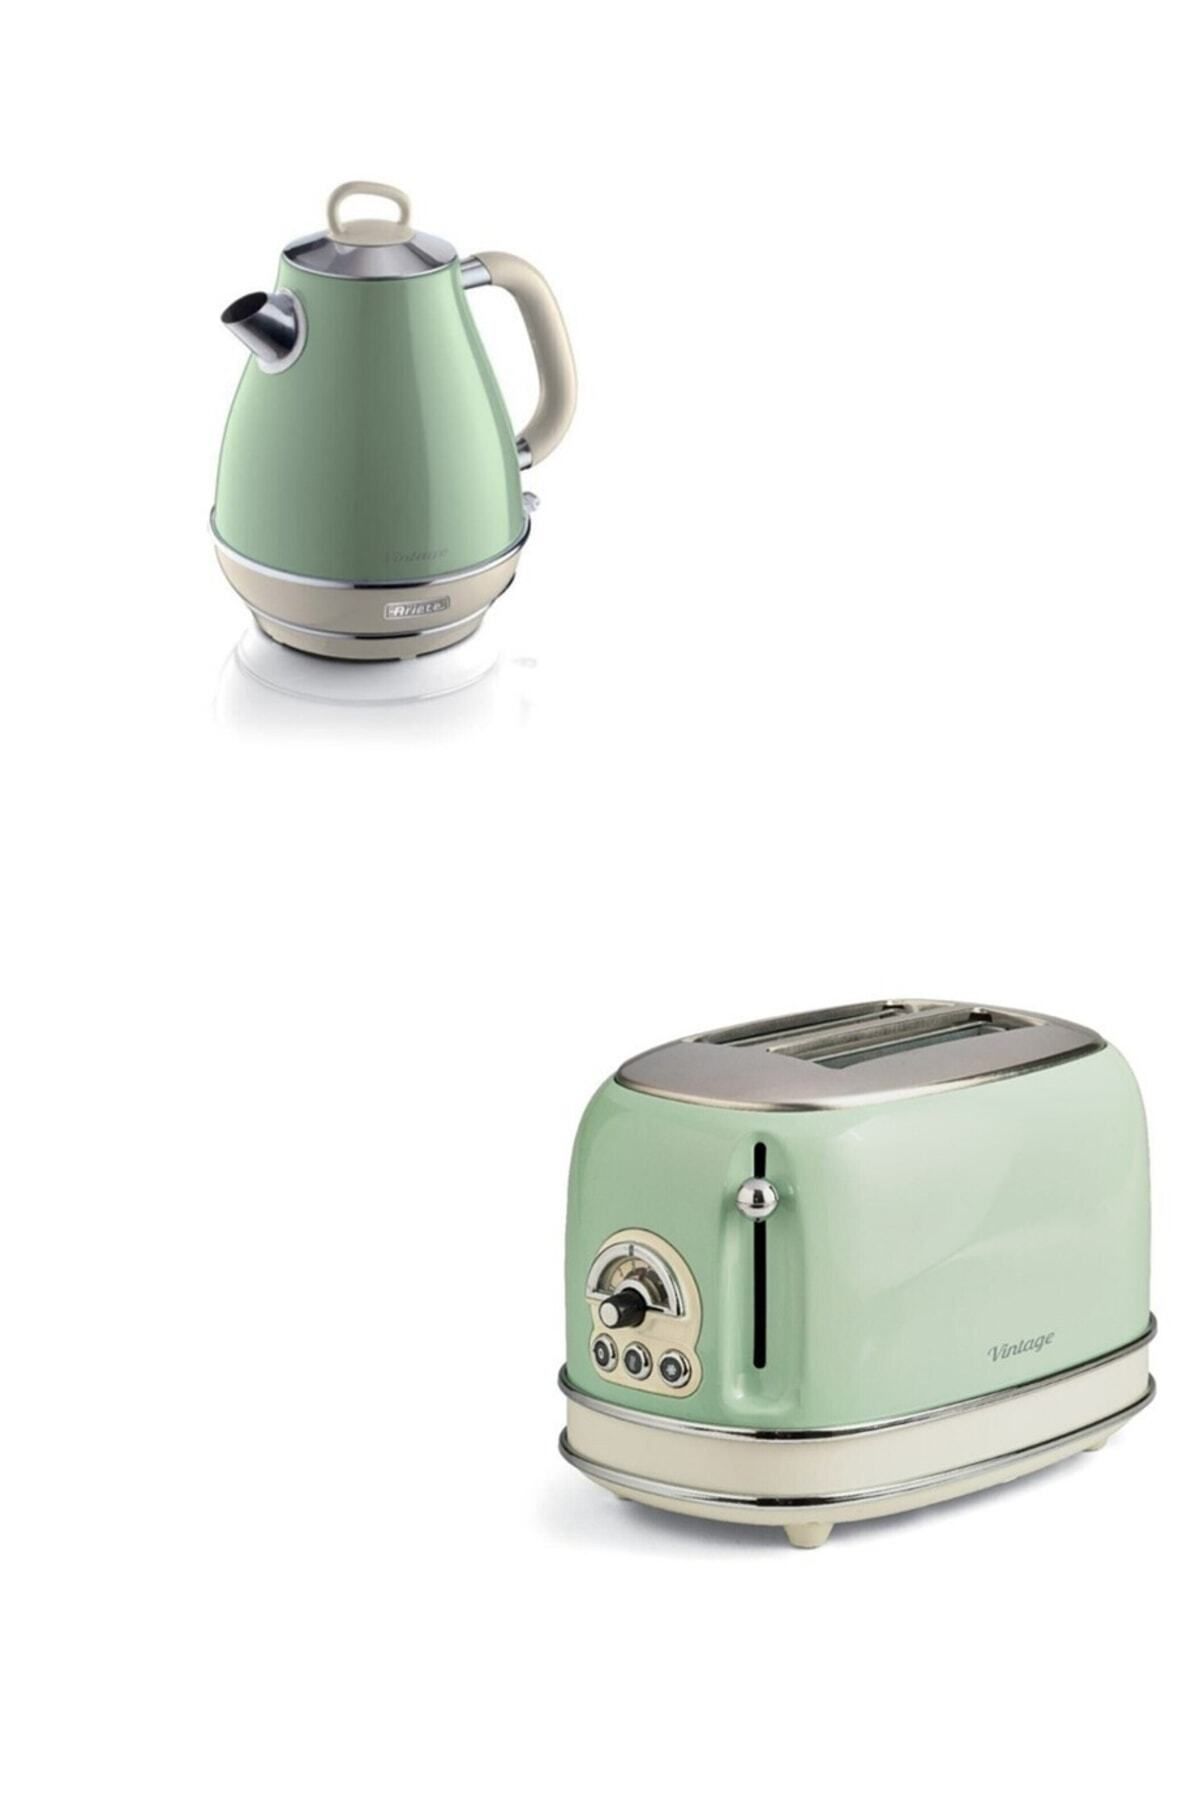 ARİETE Vintage Kettle Ve Ekmek Kızartma Makinesi Yeşil